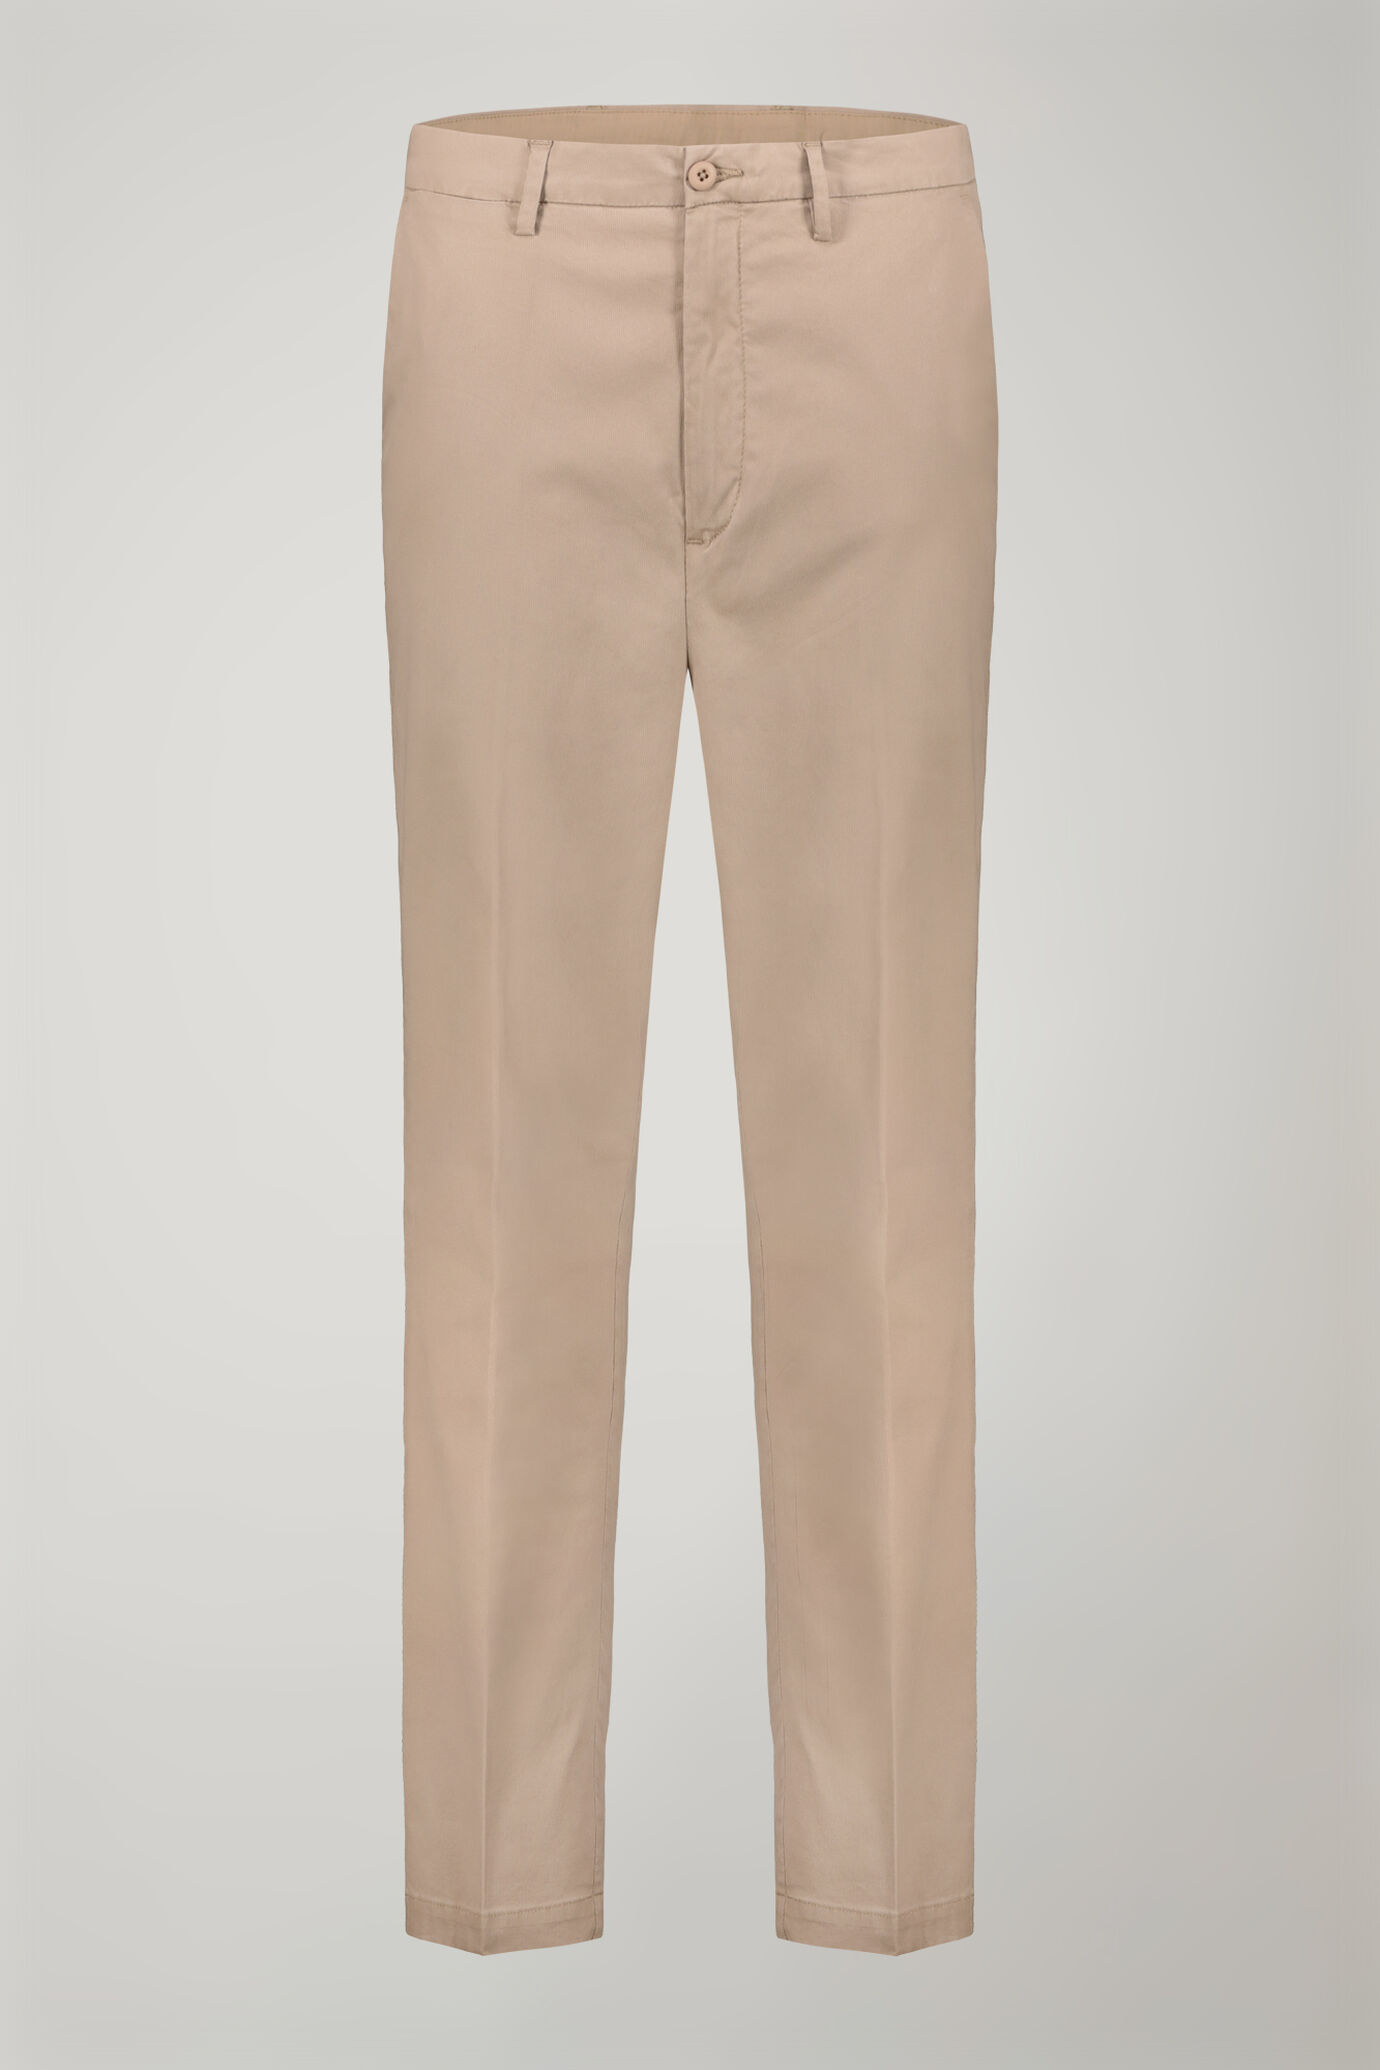 Pantalone uomo classico tessuto in cotone bacchettato tinto in capo regular fit image number 4